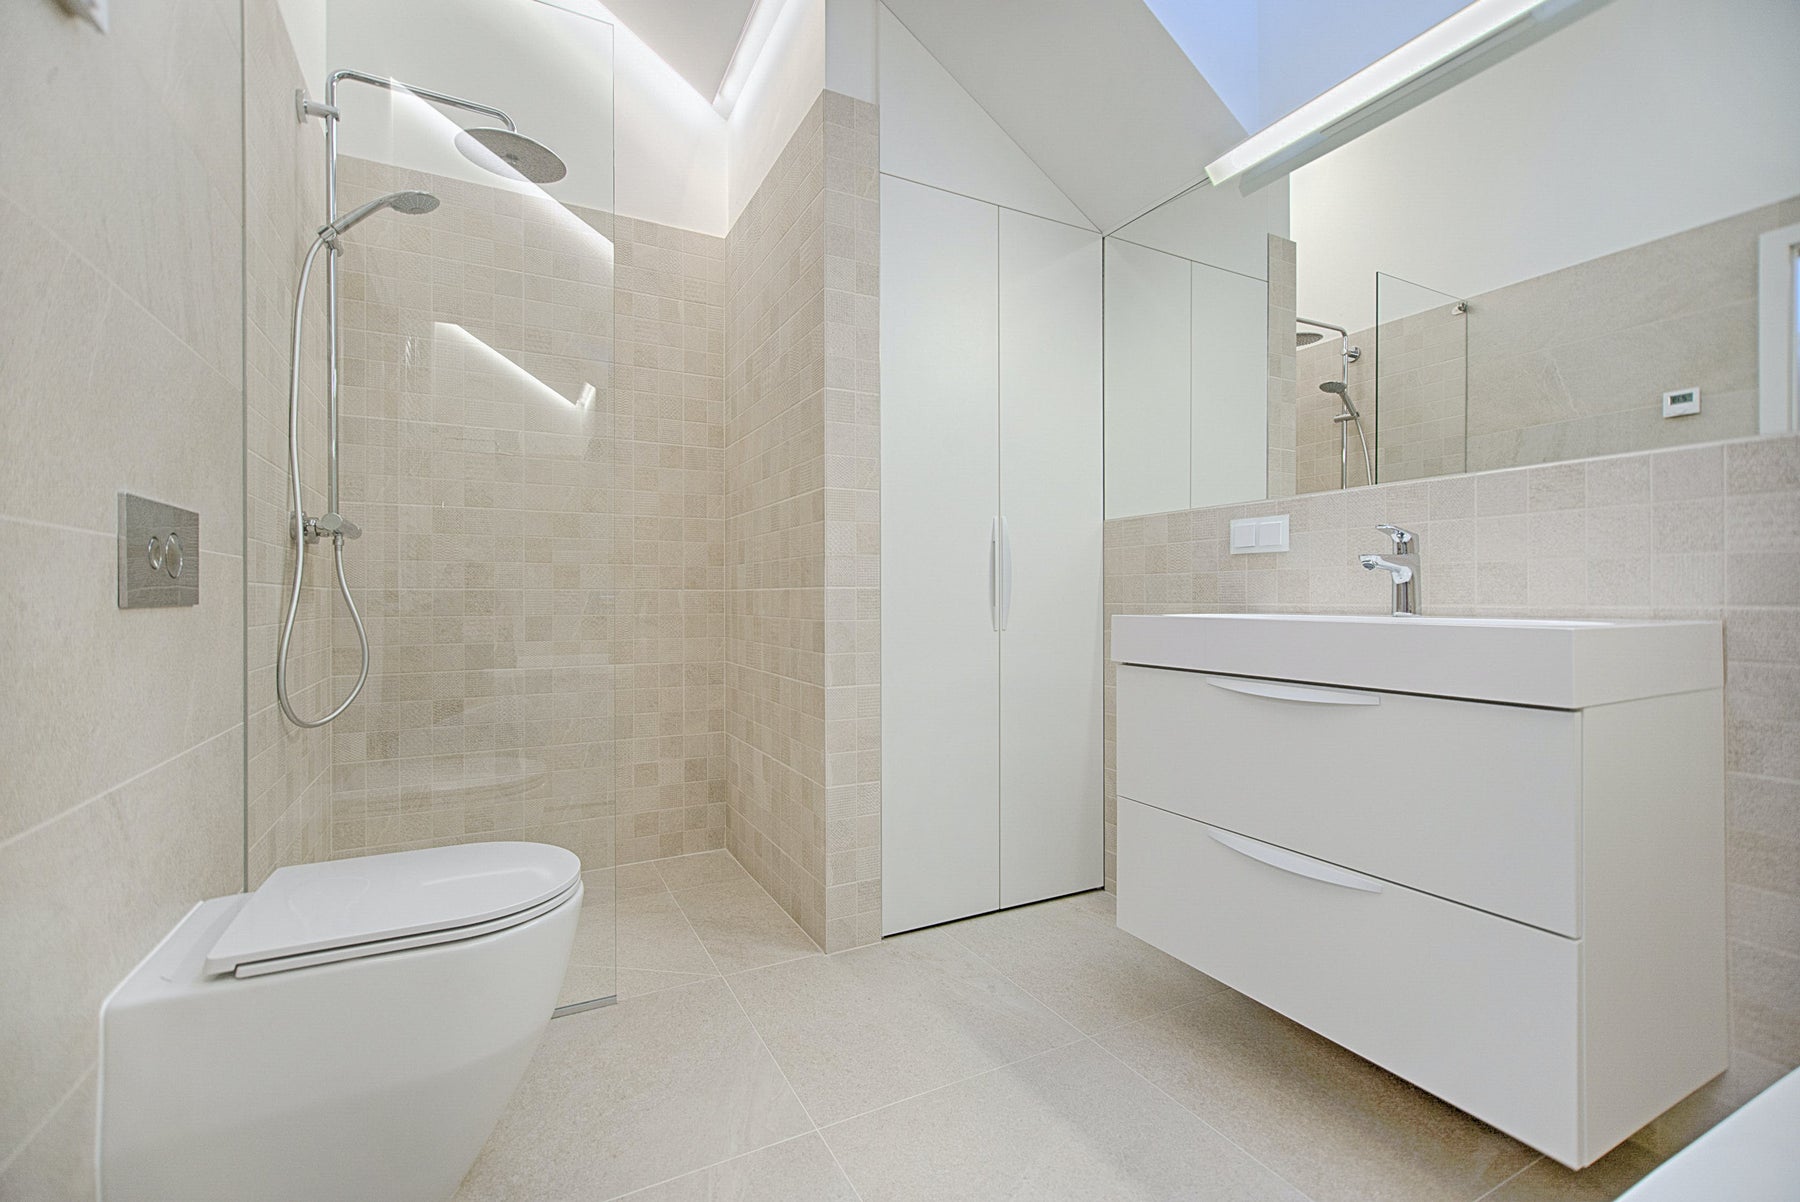 Radiant Floor Heating in Bathroom Remodels